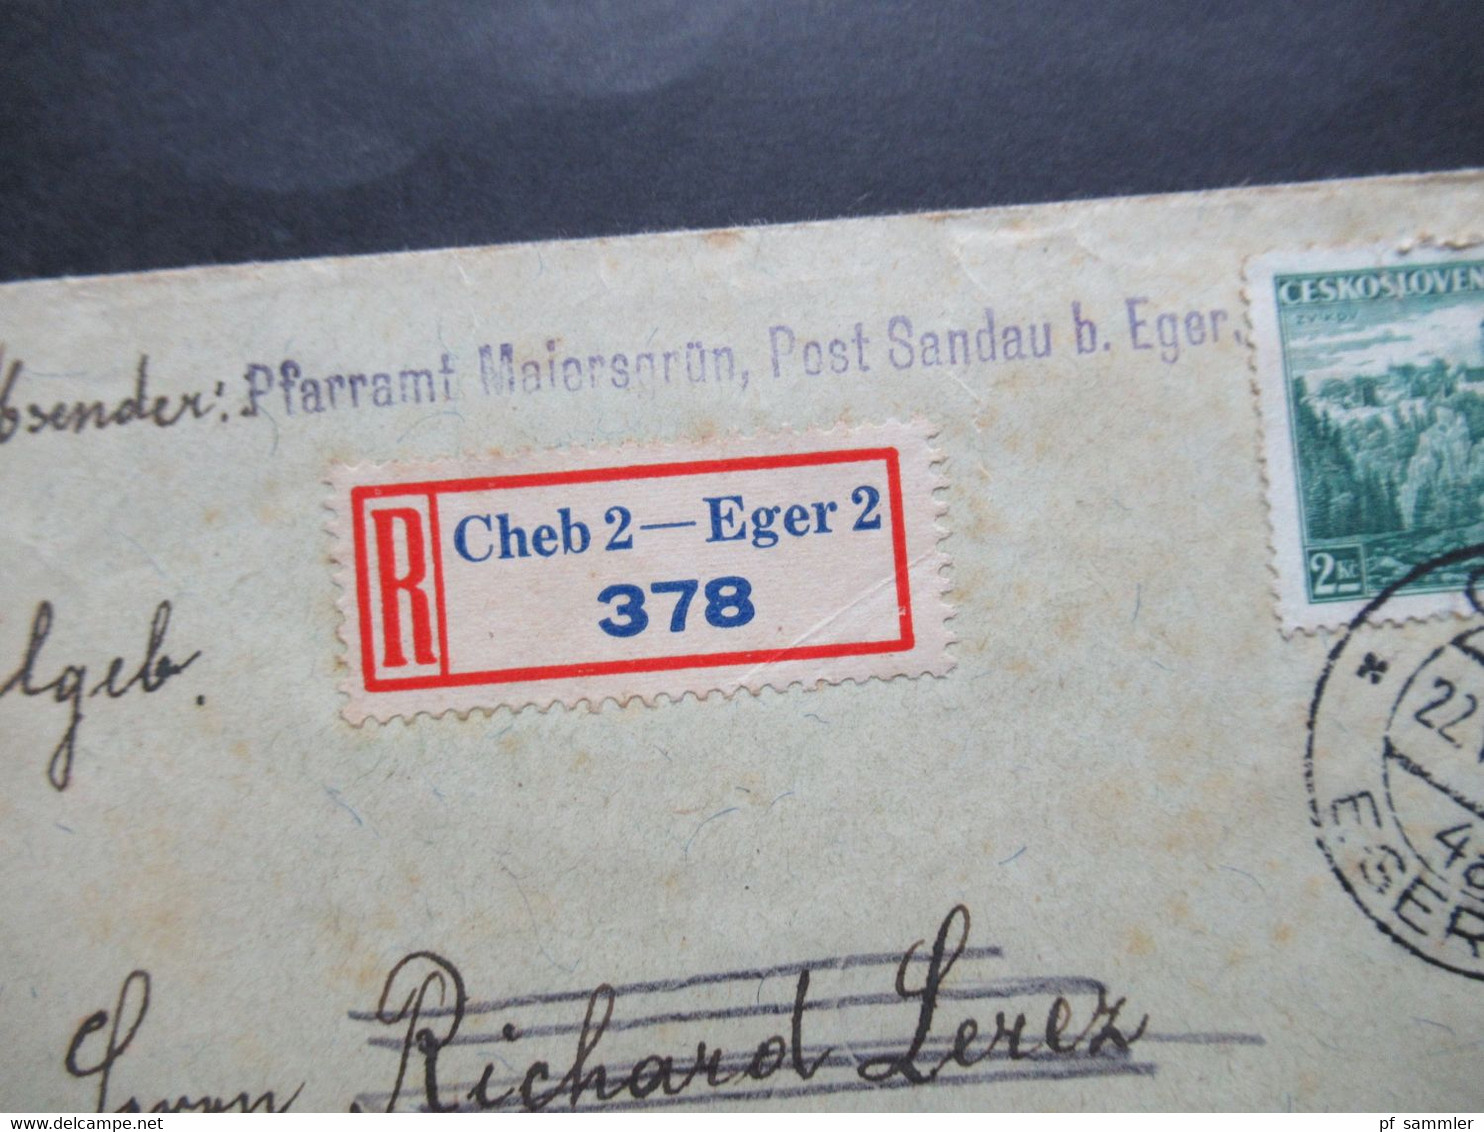 CSSR 1938 Remboursement / Nachnahme / Einschreiben Cheb 2 - Eger 2 Nach Königsberg Abs: Pfarramt Maiersgrün Post Sandau - Storia Postale